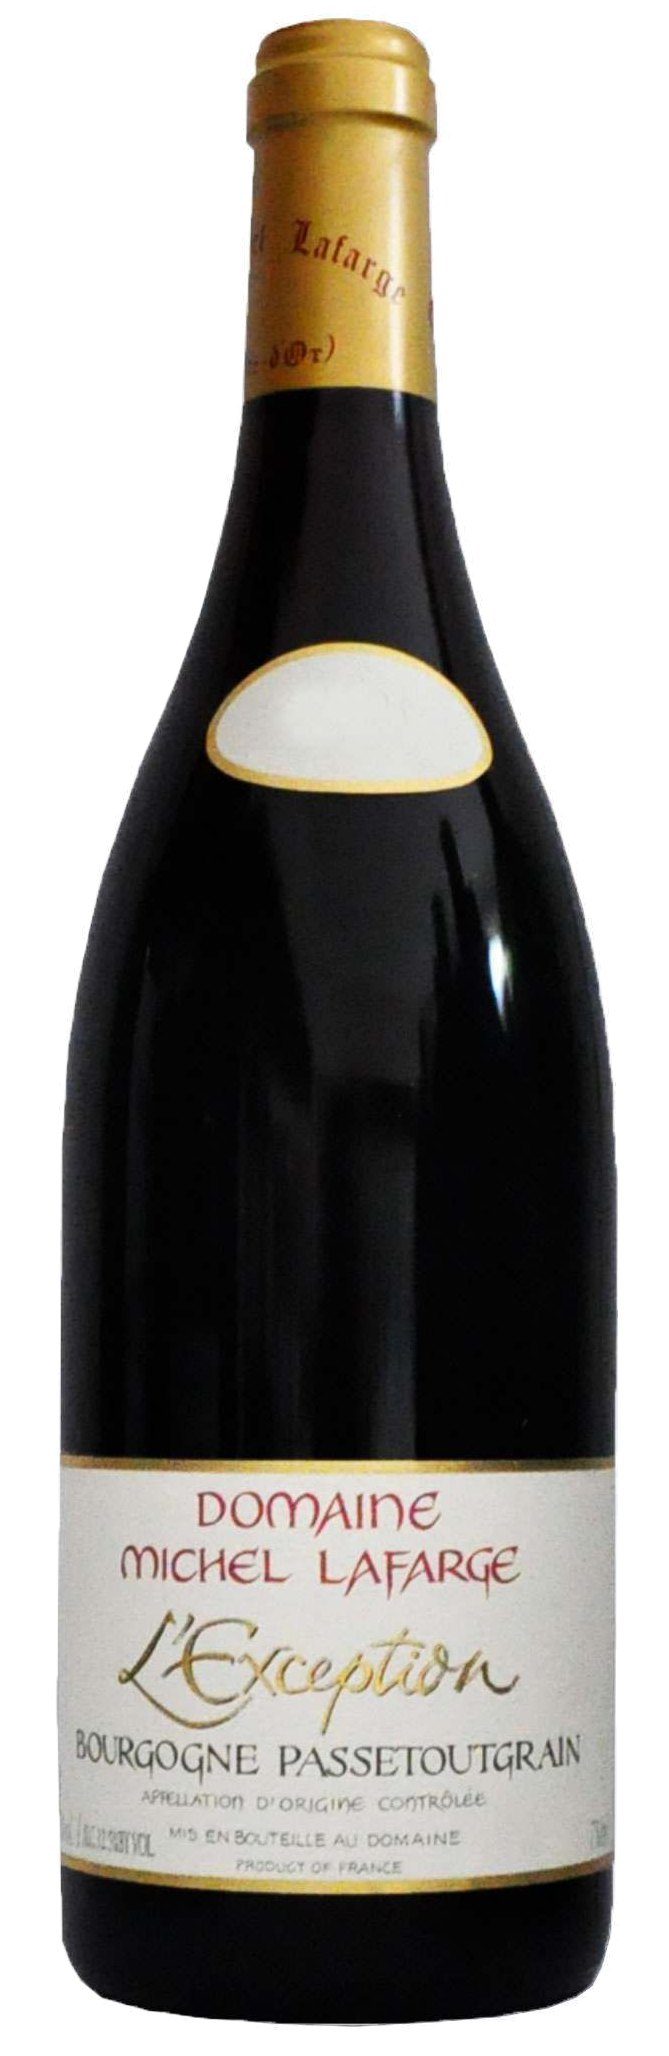 Bottle shot of 2017 Bourgogne Passetoutgrain L'Exception